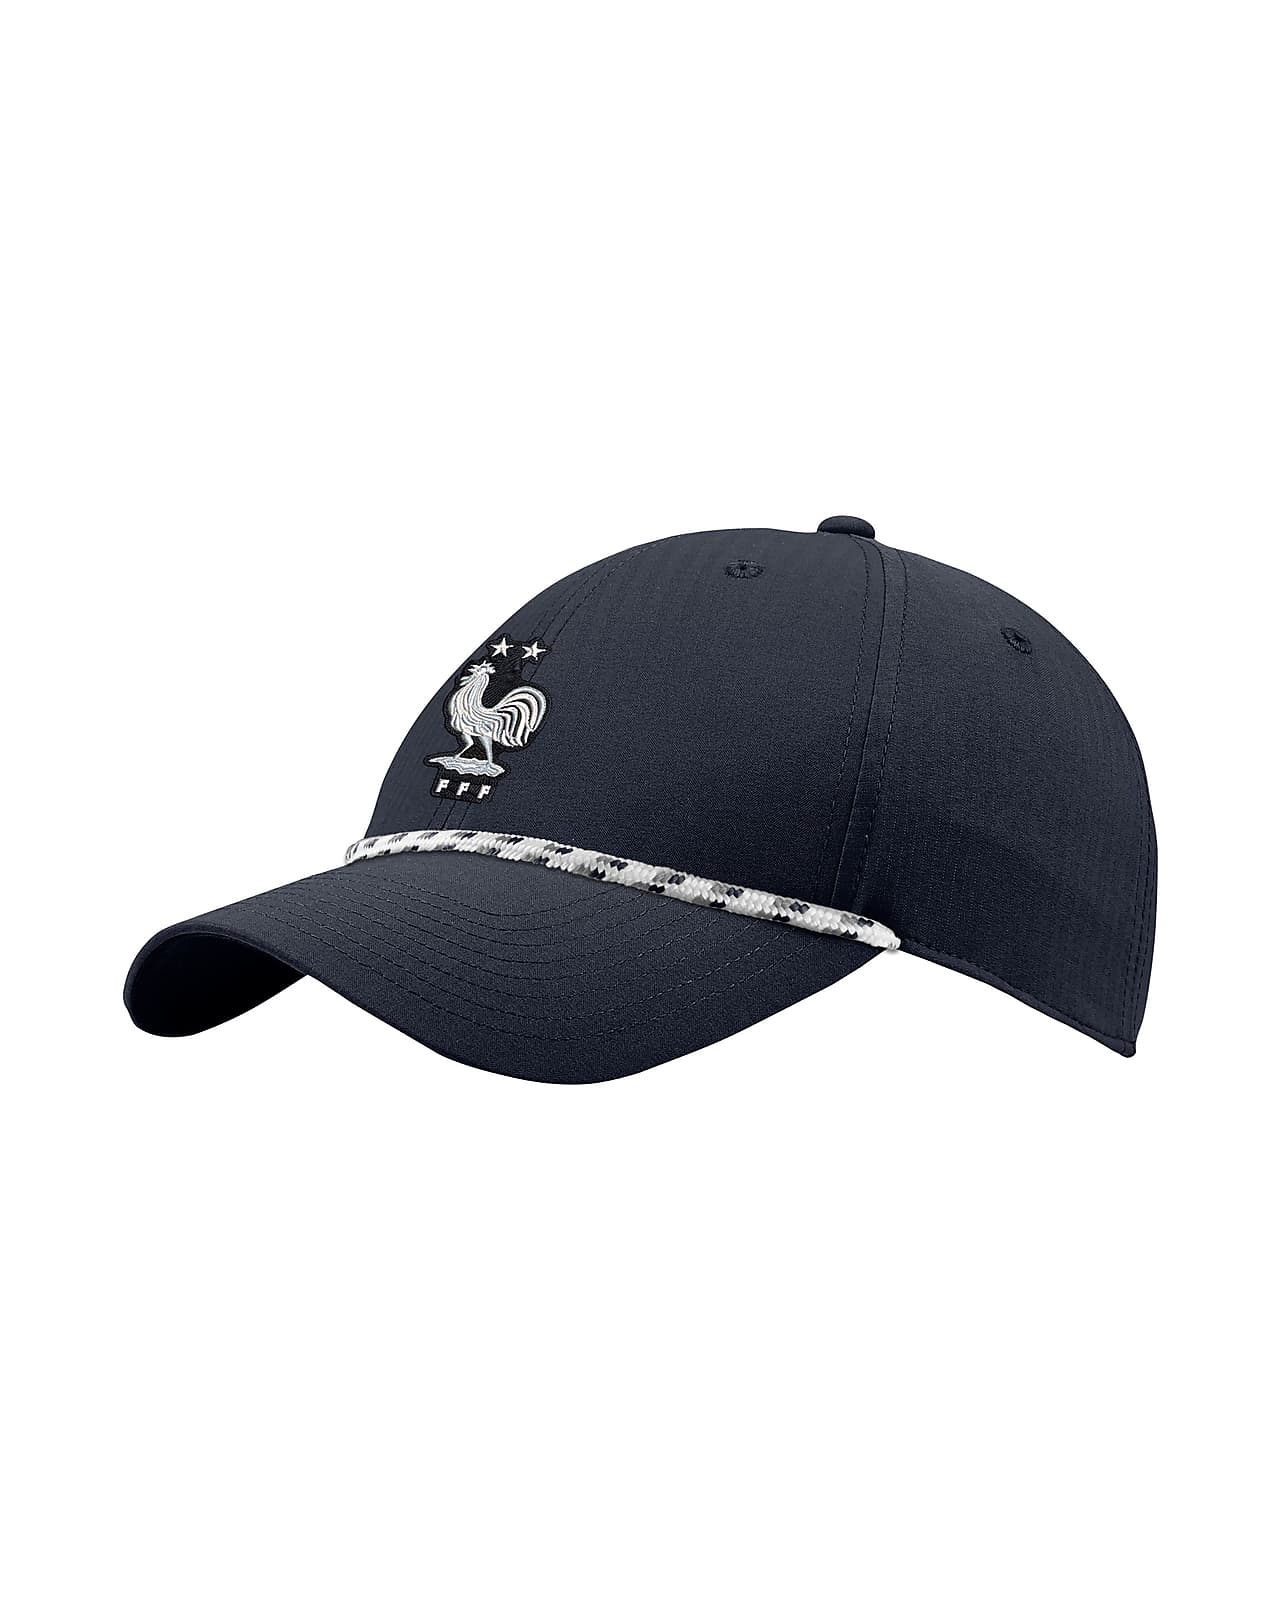 FFF Legacy91 Men's Adjustable Rope Hat